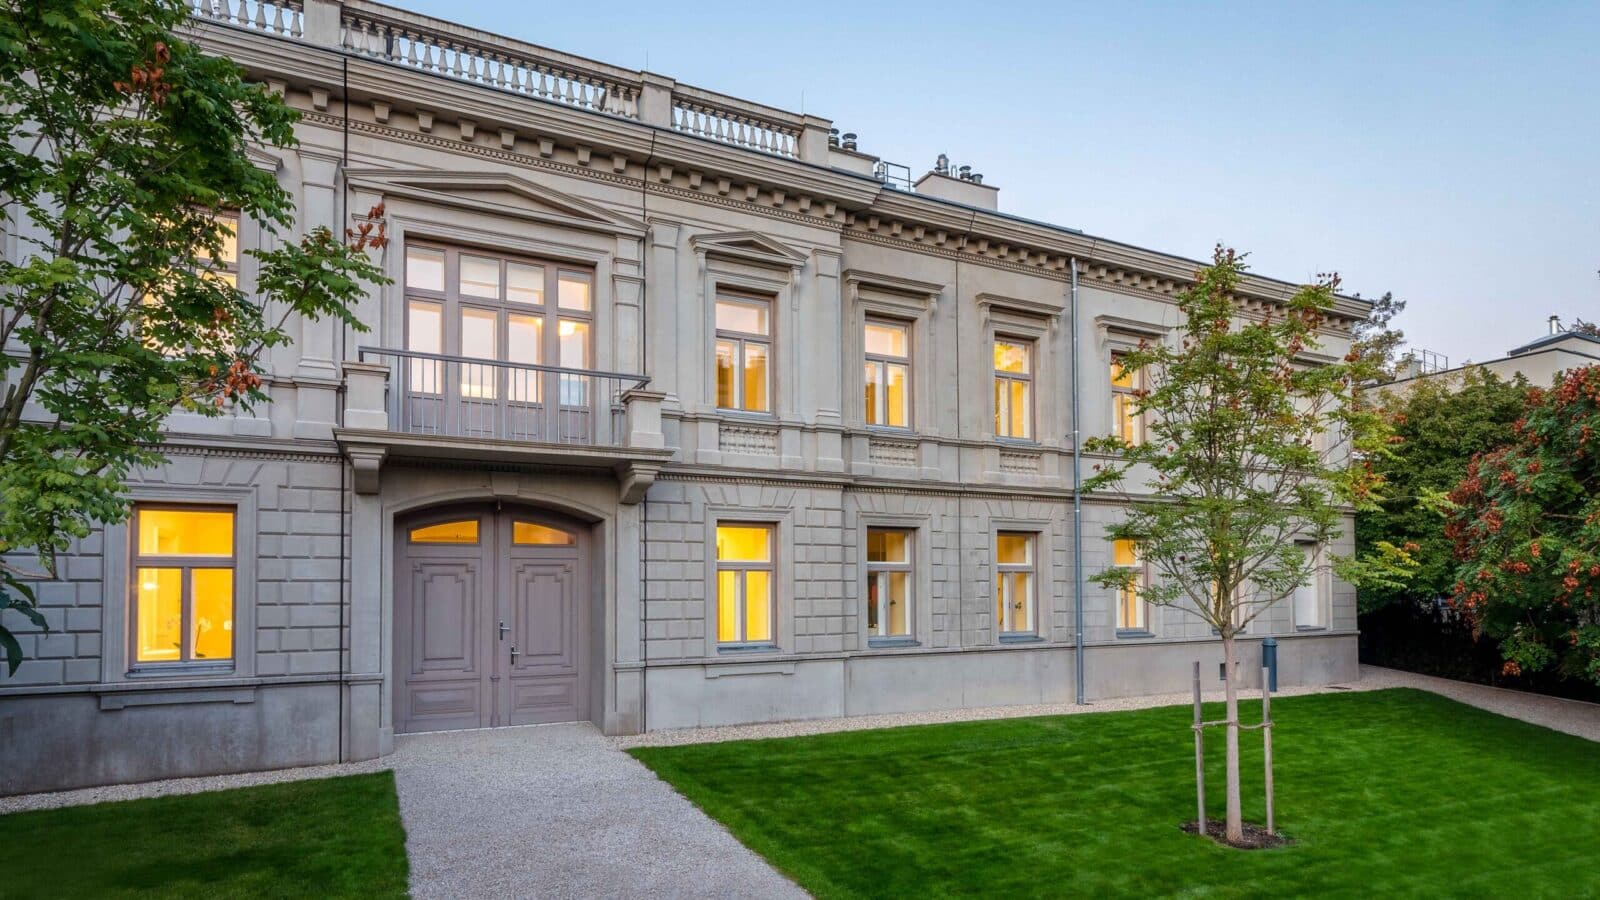 Villa Suvero in Wien mit Einfahrt von außen